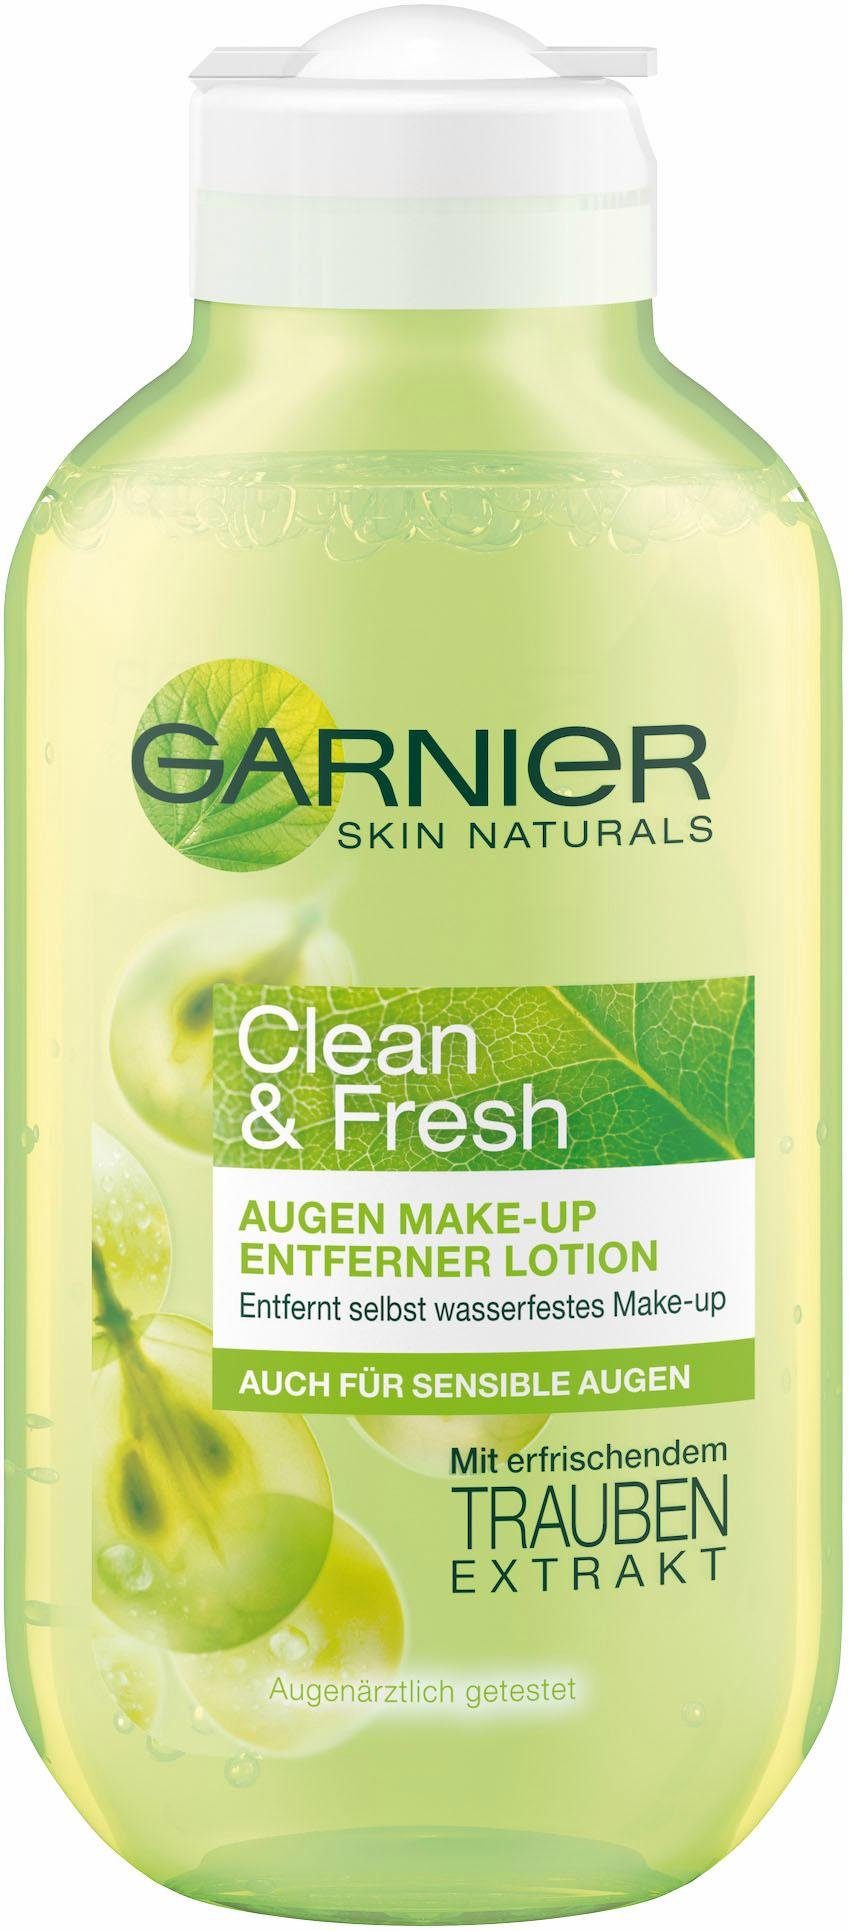 GARNIER Fresh & Clean Augen-Make-up-Entferner